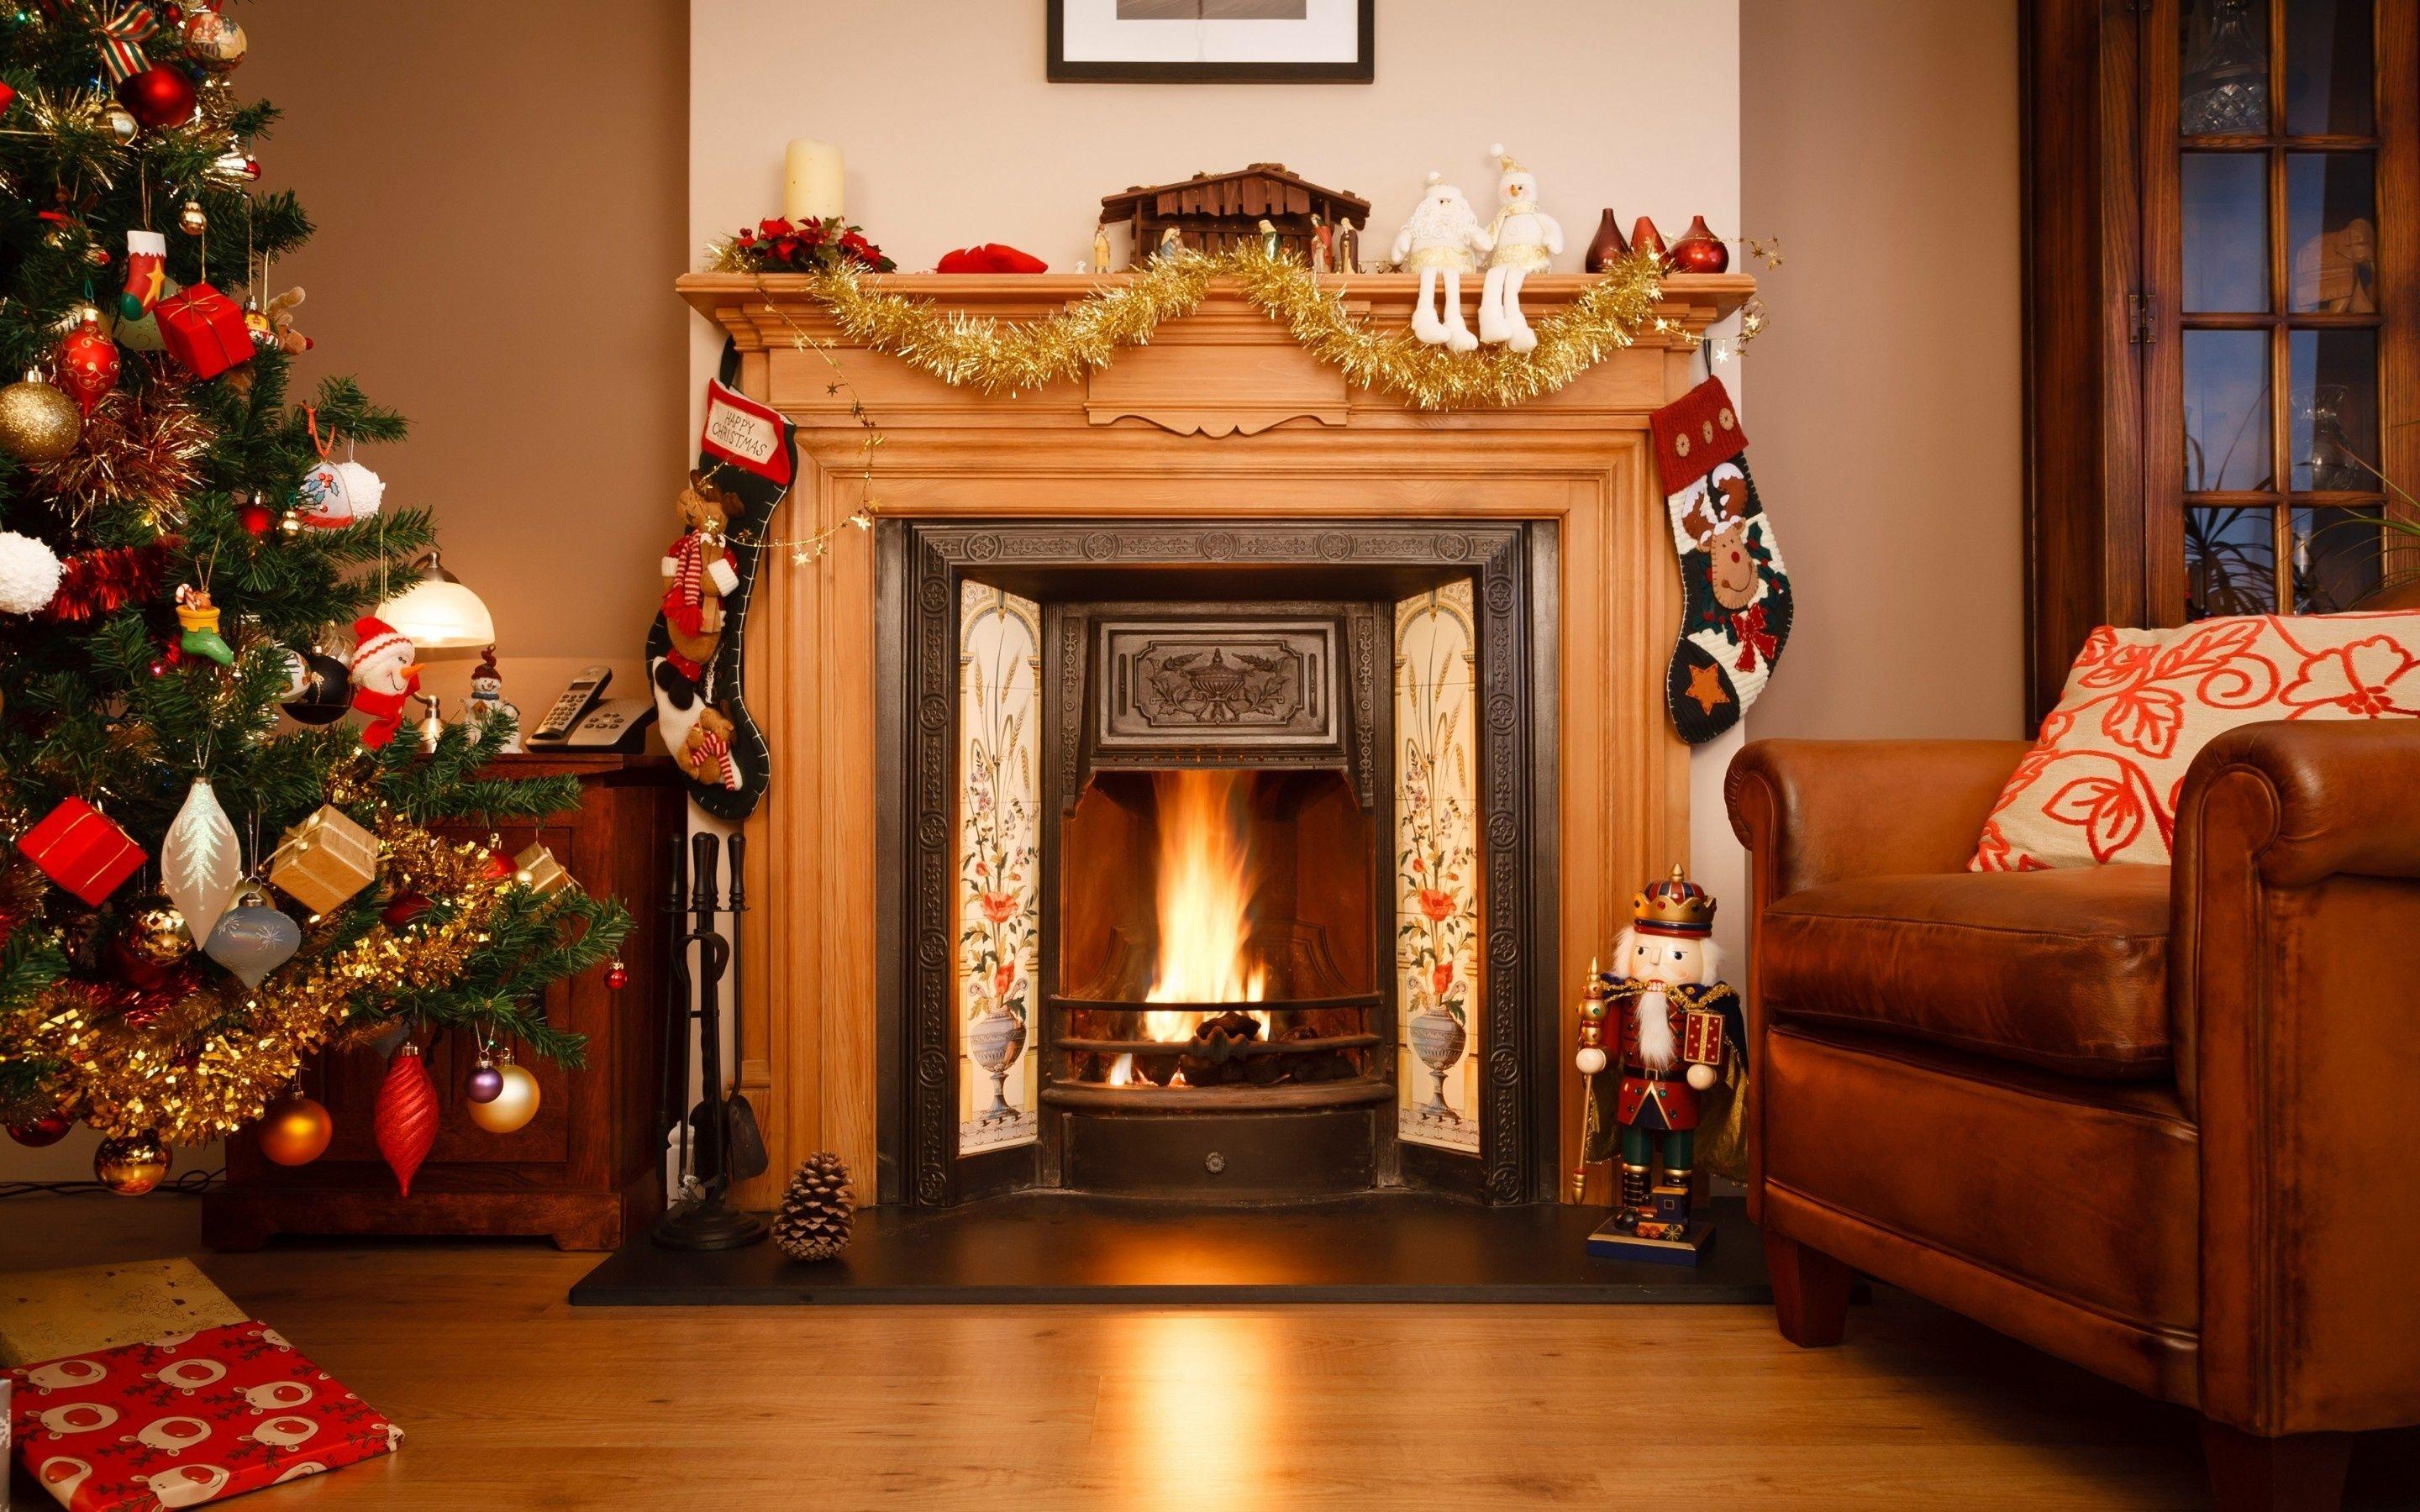 Winter Fireplace Wallpapers Top Những Hình Ảnh Đẹp